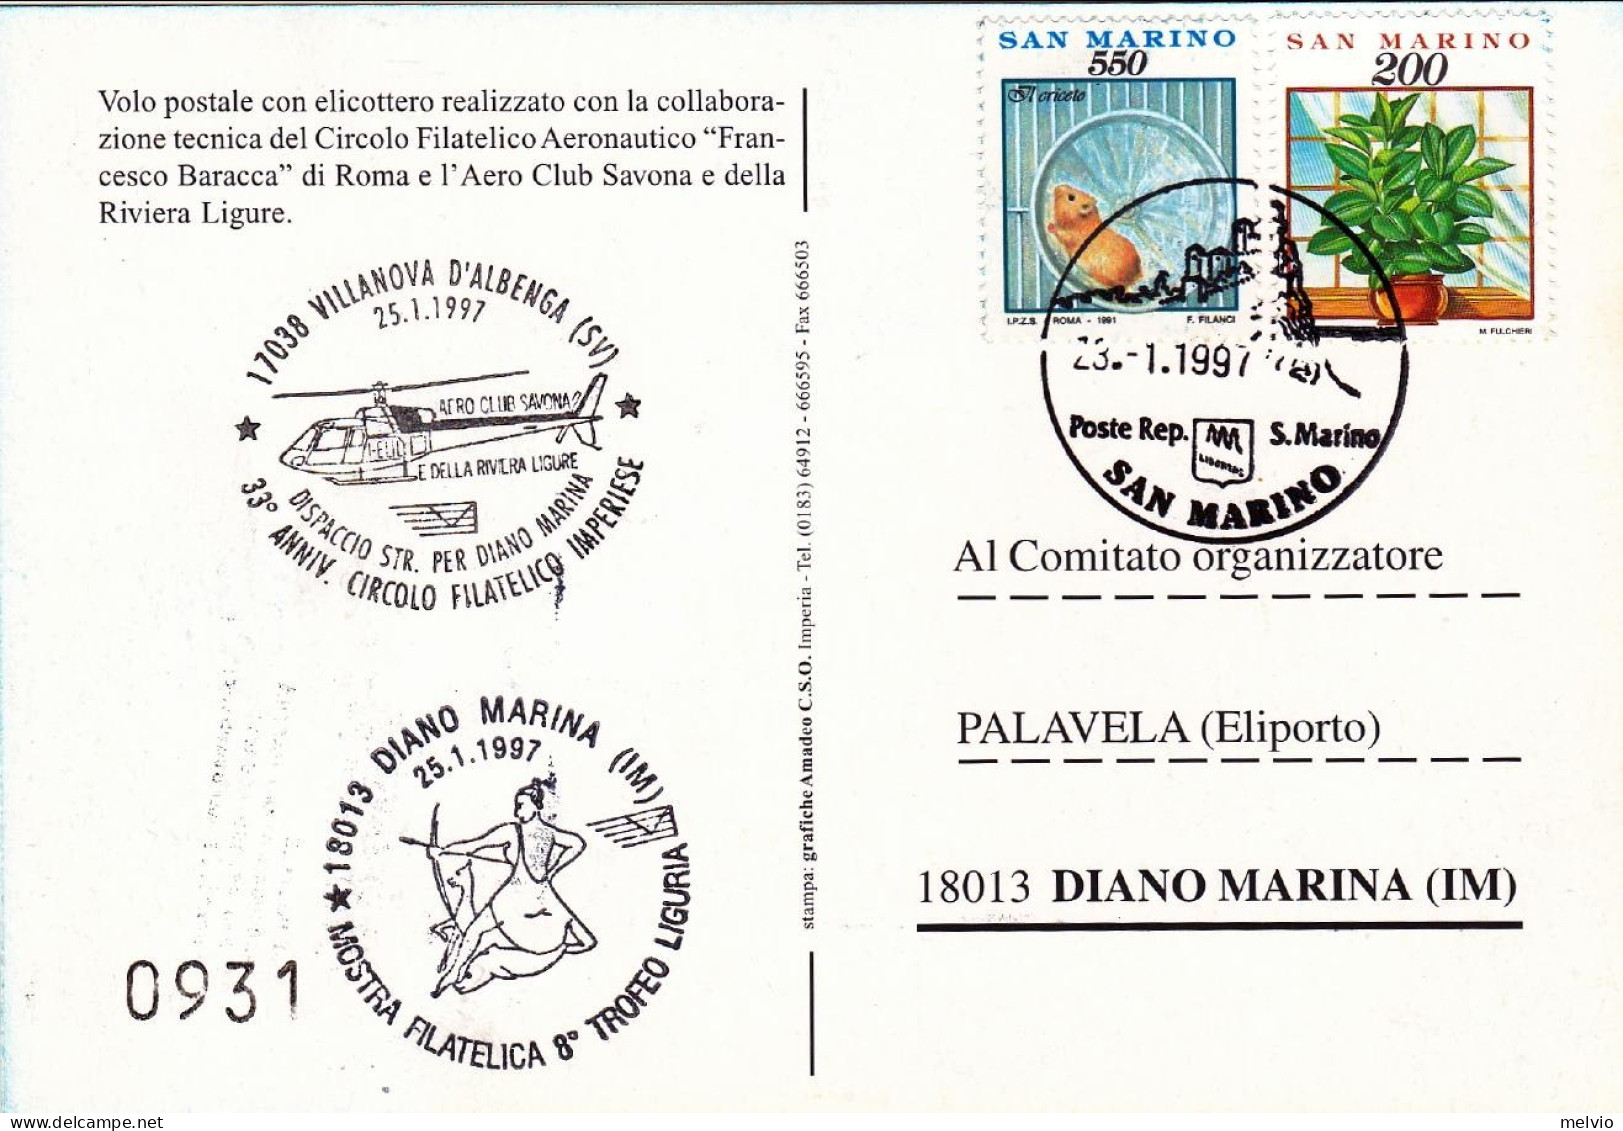 San Marino-1997 Cartolina Numerata Volo Postale Con Elicottero Villanova D'Alben - Corréo Aéreo